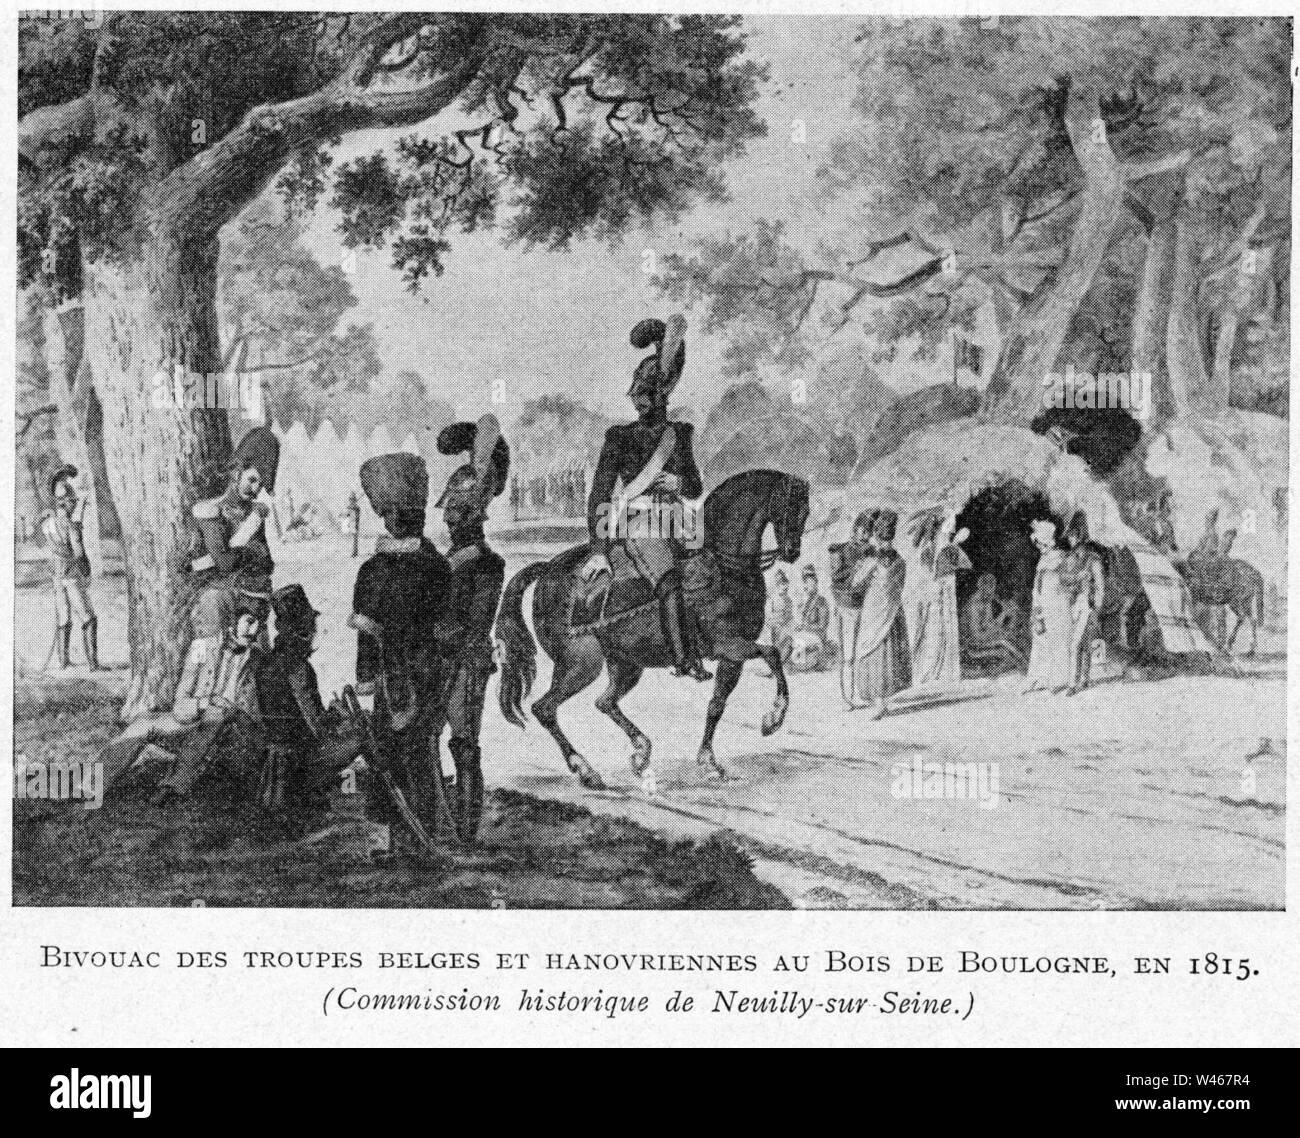 Corbel038 Bivouac des troupes belges et hanovriennes au Bois de Boulogne en 1815. Banque D'Images